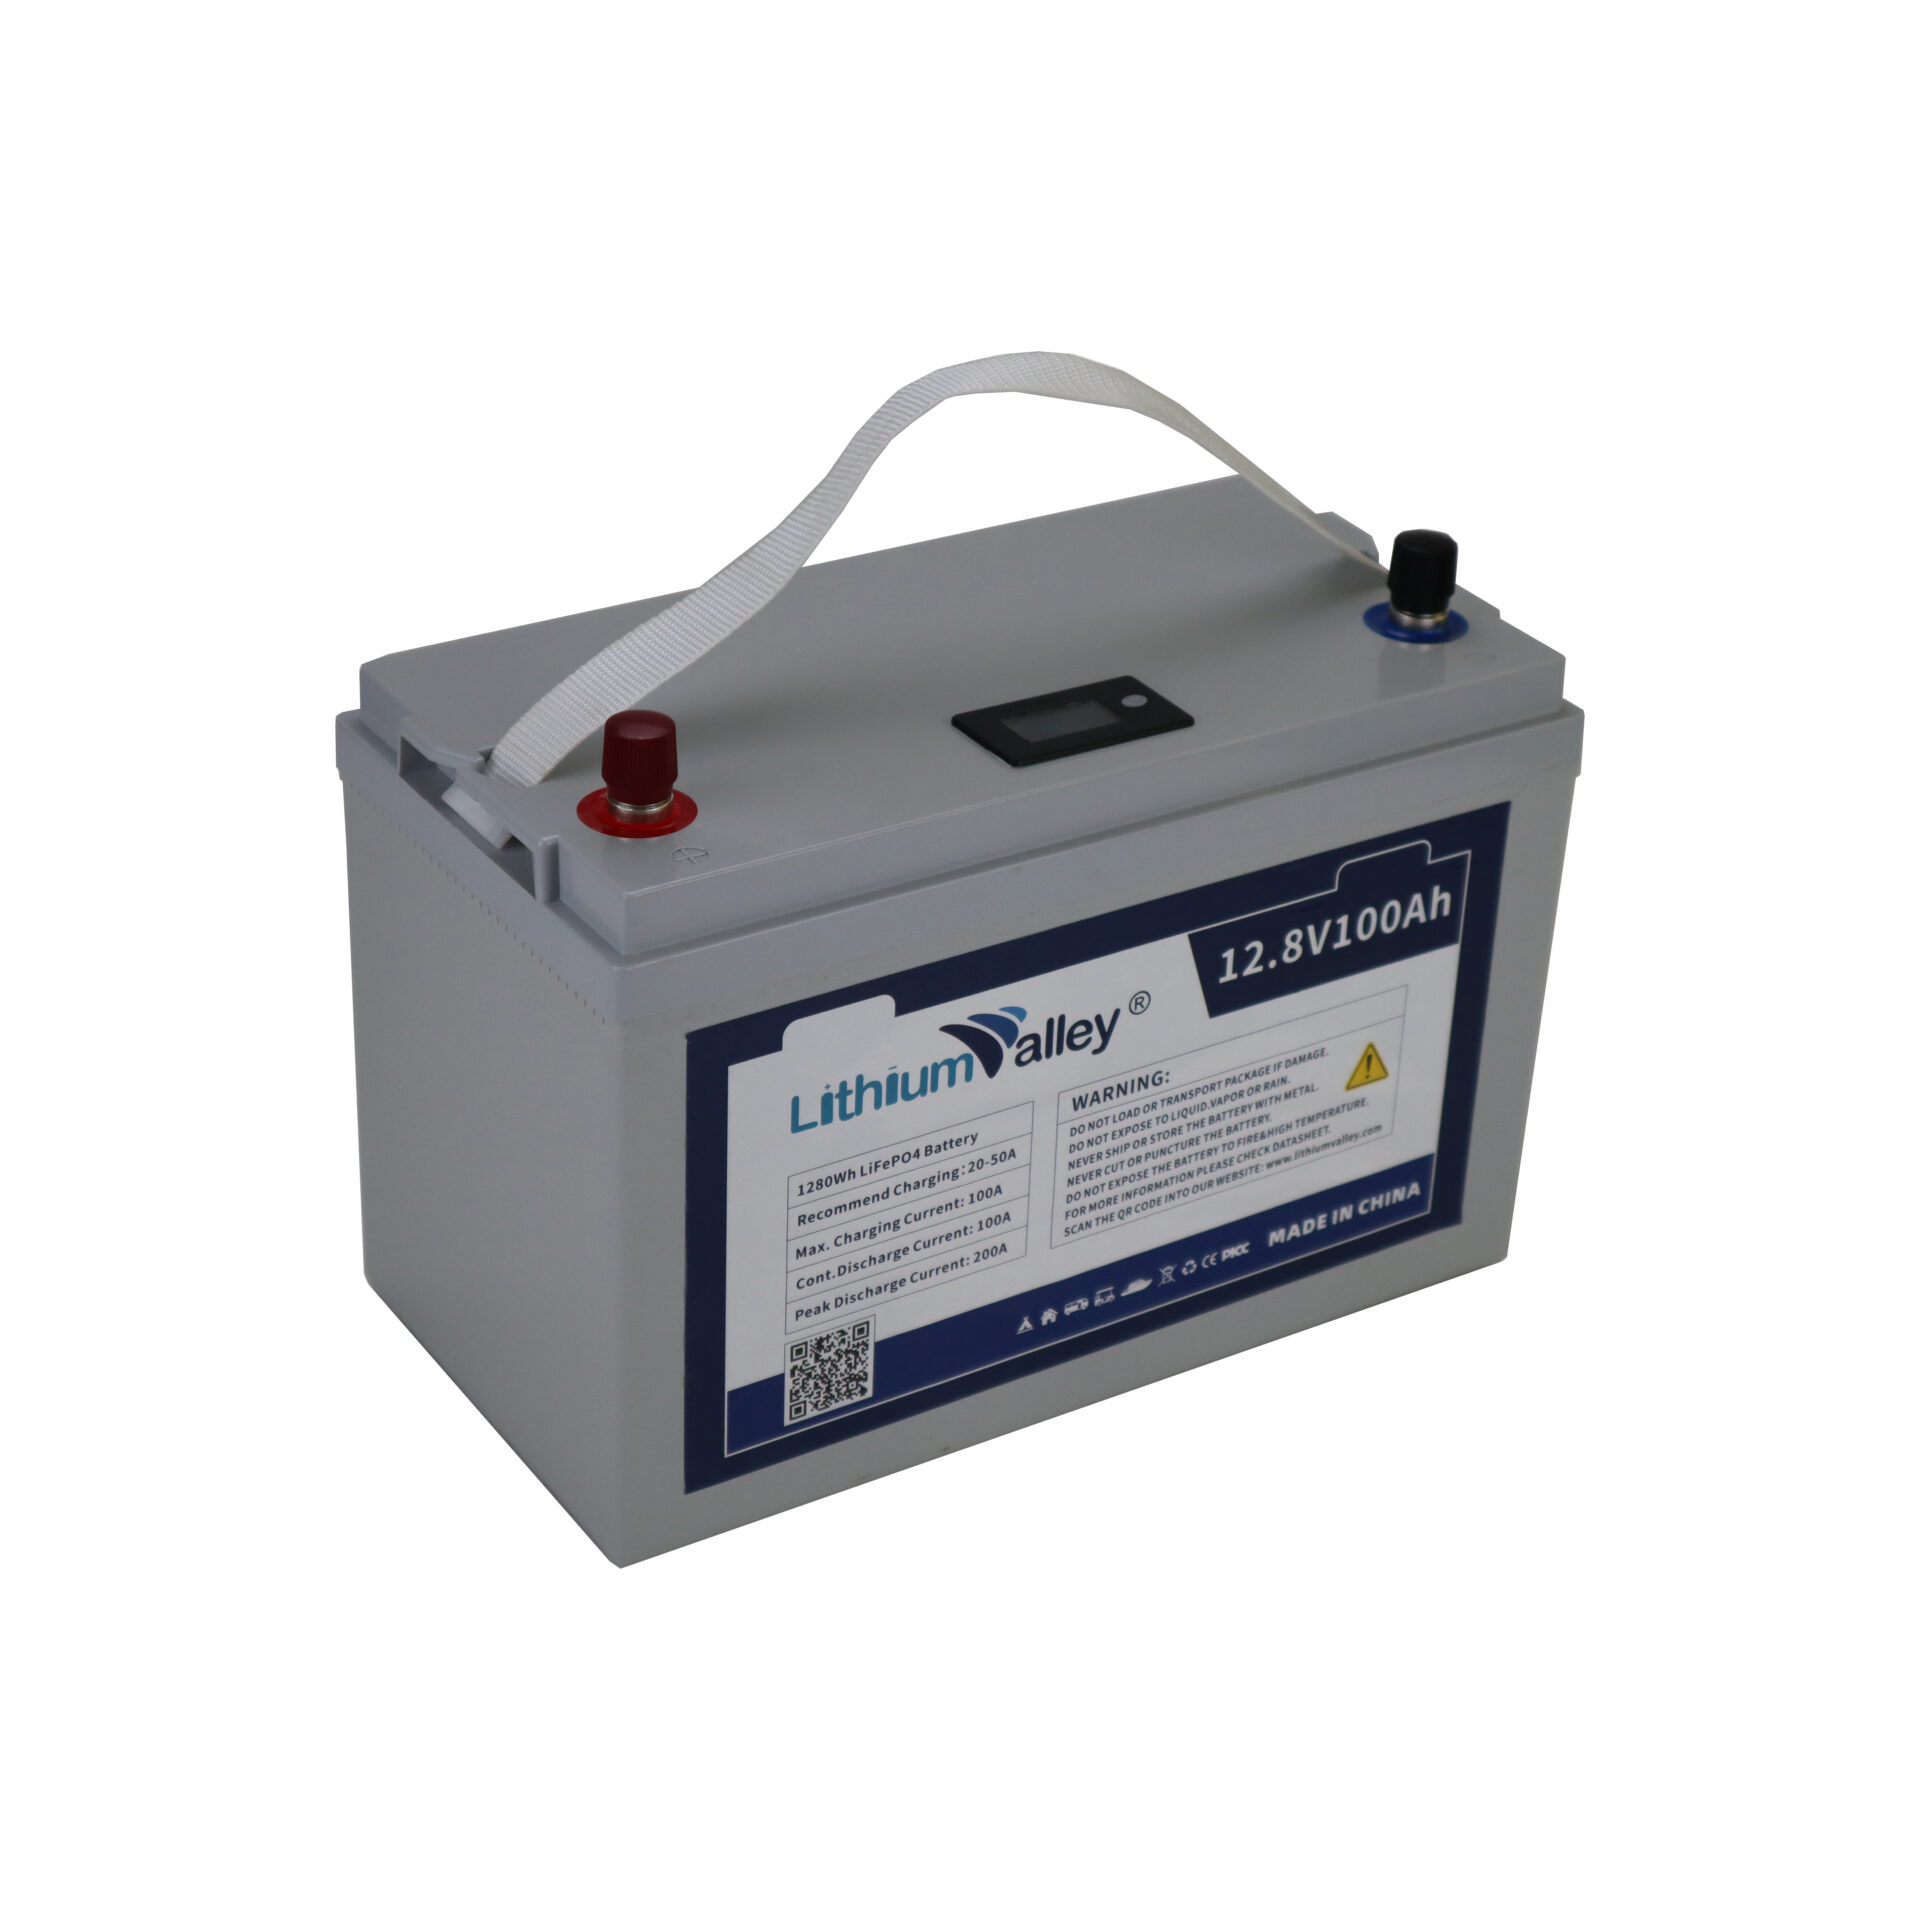 LiFePO4 12.8V 100AH RV battery - Lithium Valley